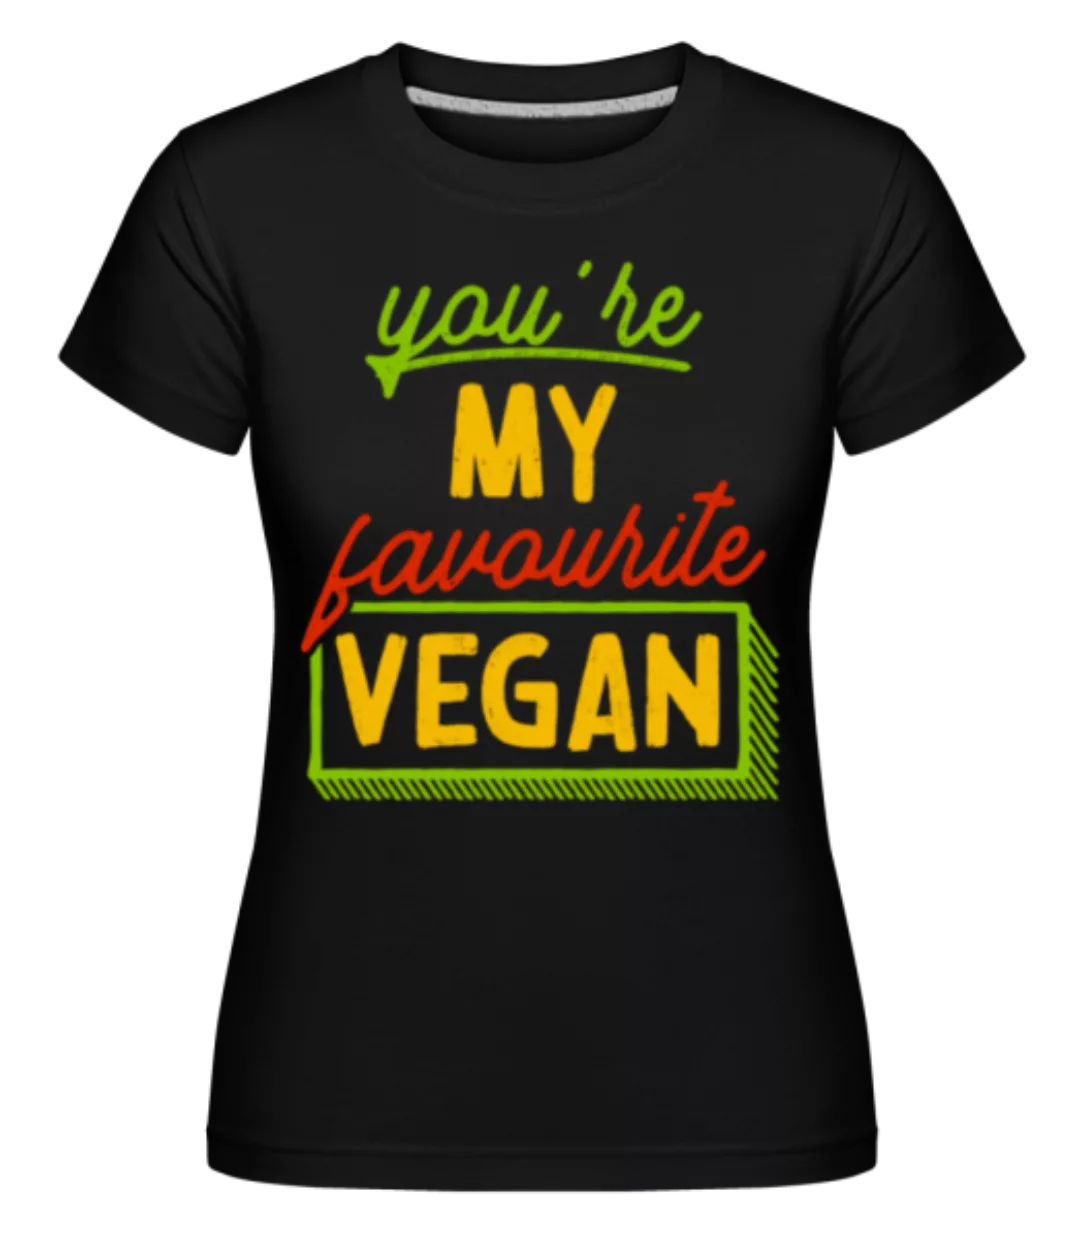 You're My Favourite Vegan · Shirtinator Frauen T-Shirt günstig online kaufen